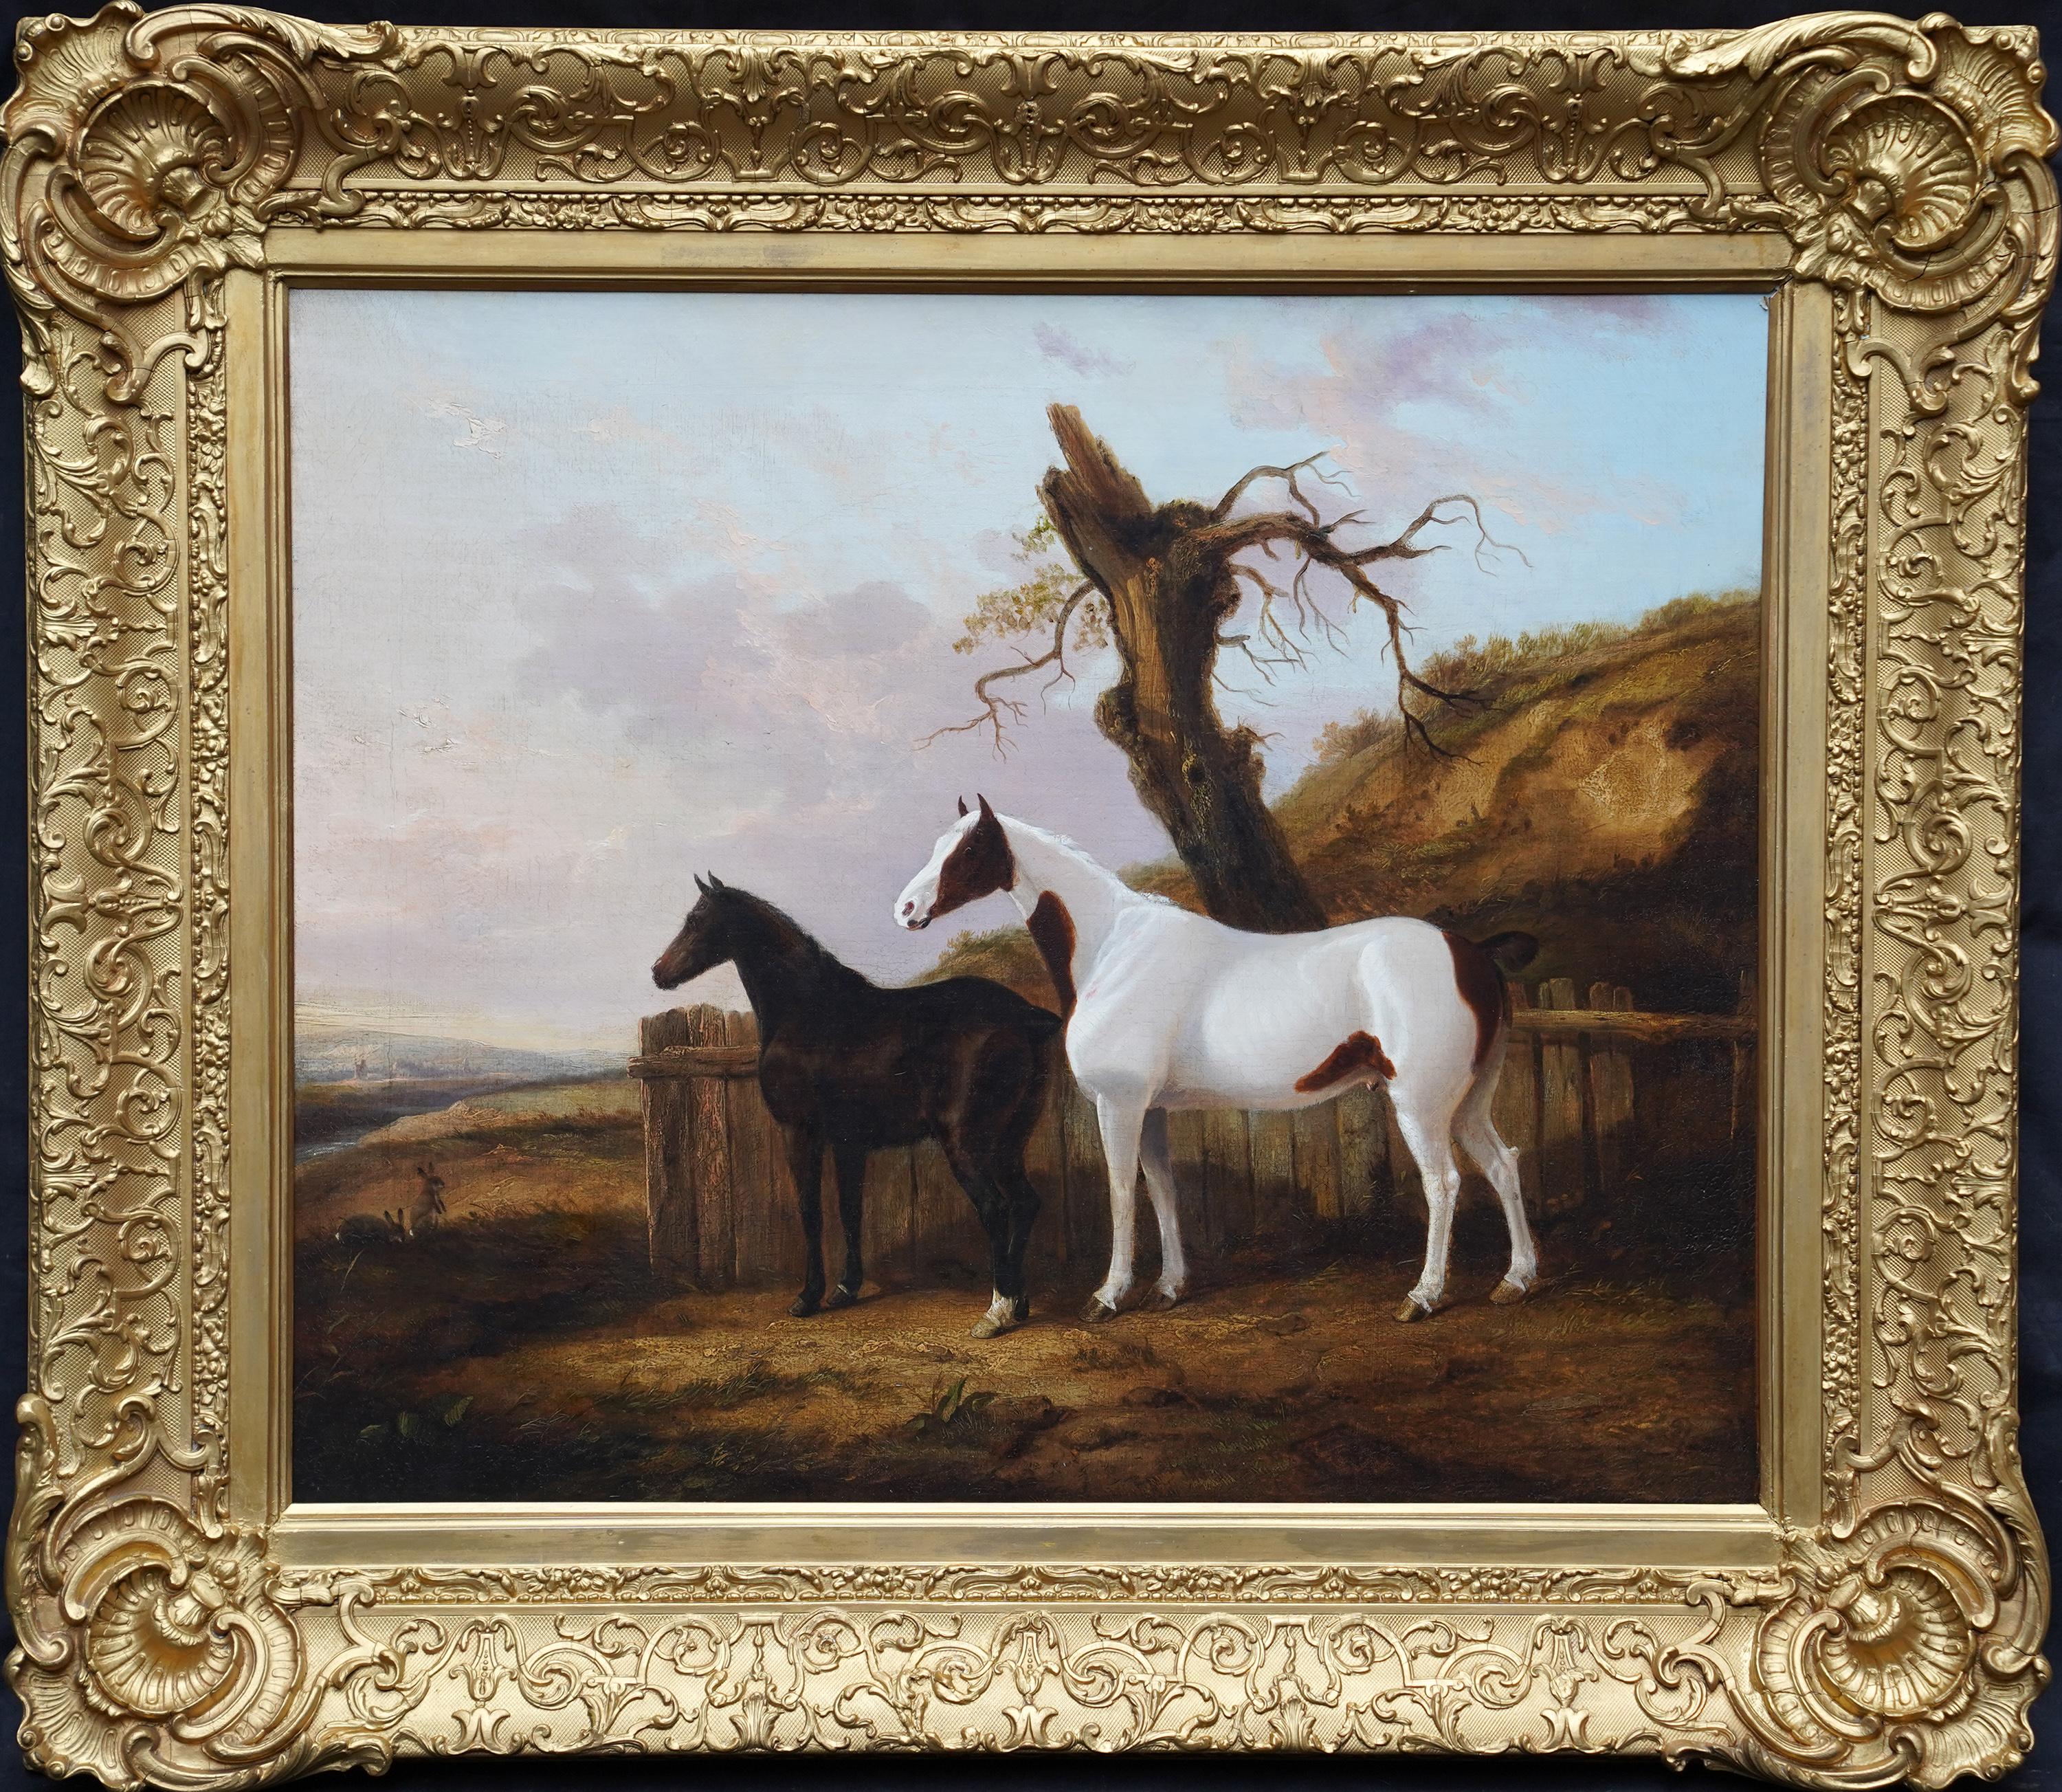 Portrait de deux chevaux dans un paysage - Peinture à l'huile d'art équestre britannique du 19e siècle